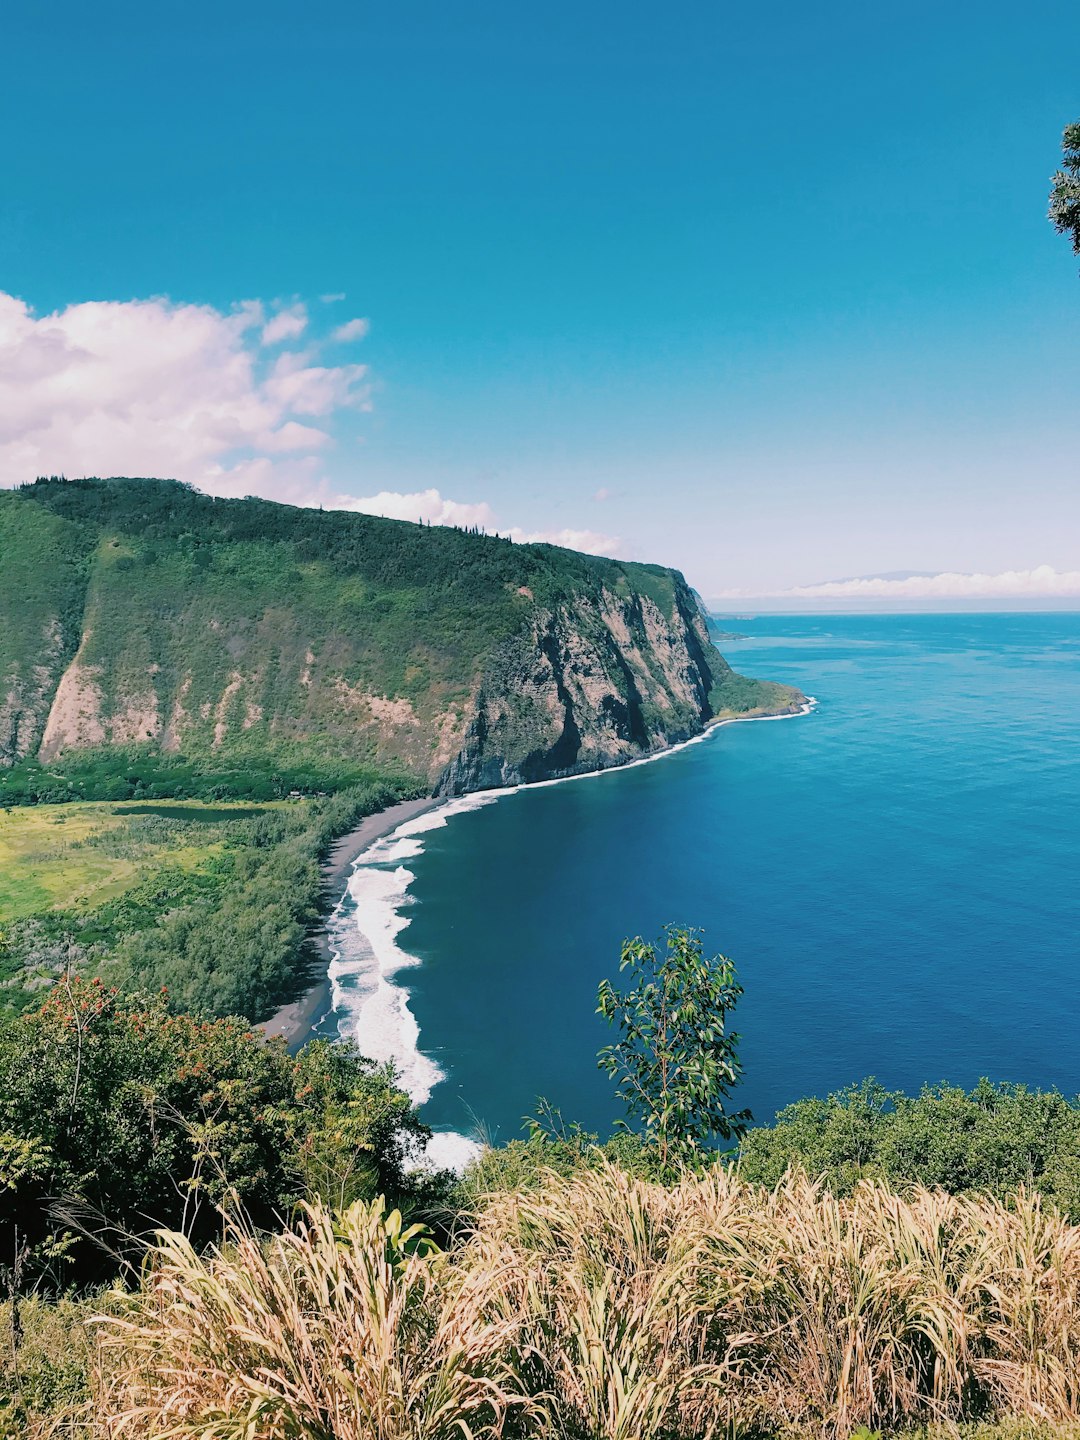 Cliff photo spot Waipi’o Valley Lookout Hana